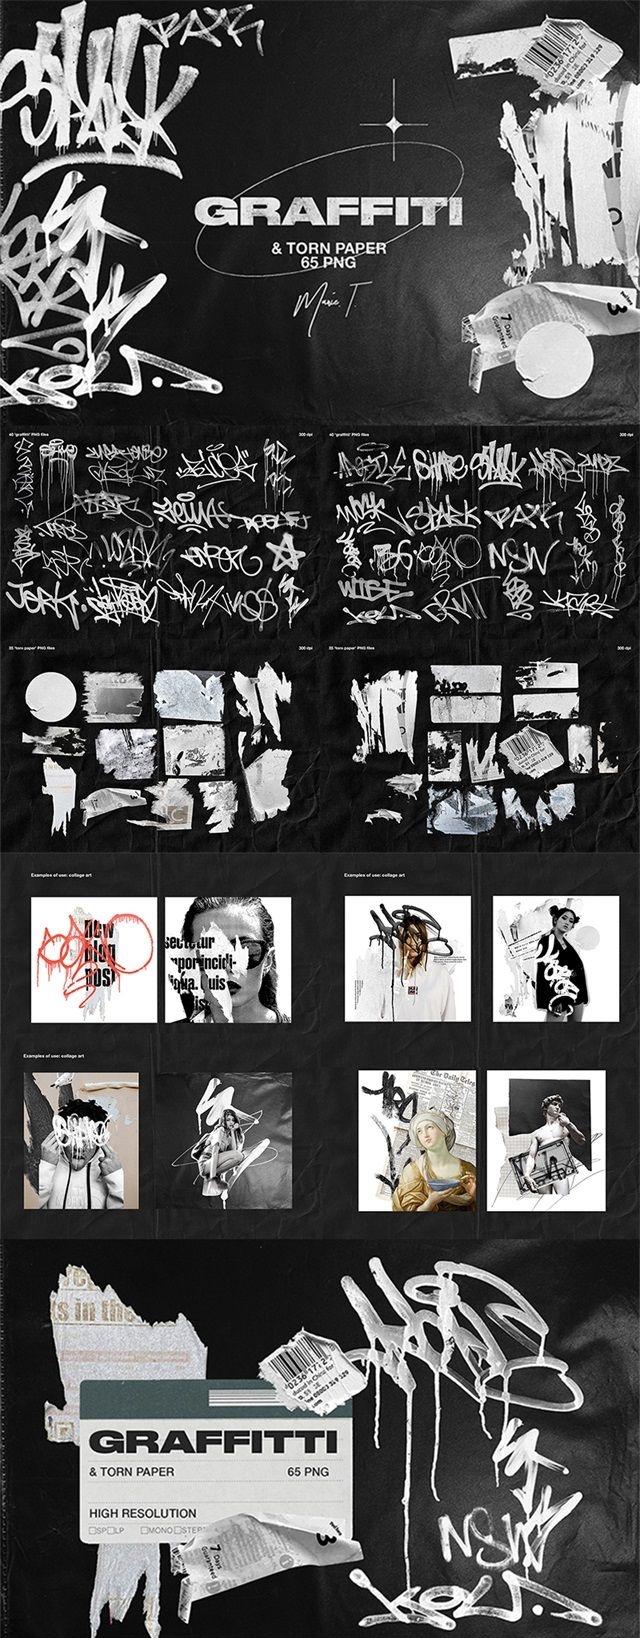 时尚潮流嘻哈涂鸦喷漆素材合集包PNG格式